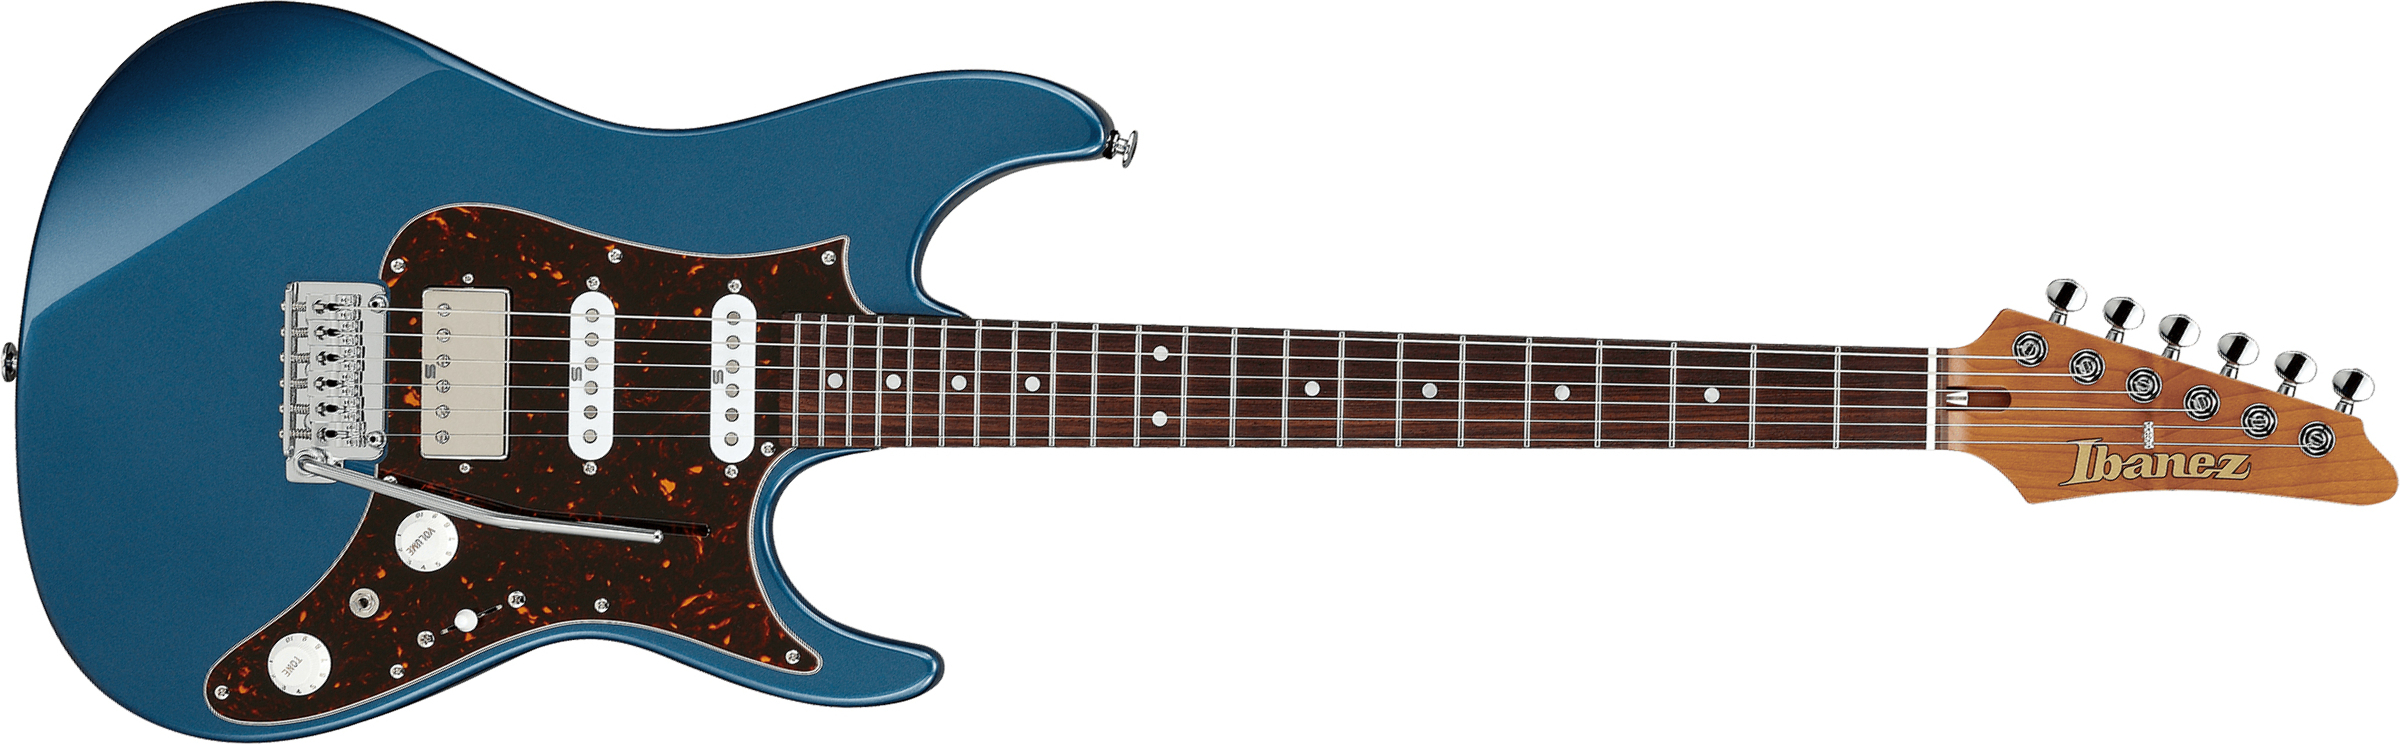 Ibanez Az2204n Pbm Prestige Jap Hss Seymour Duncan Trem Rw - Prussian Blue Metallic - Guitare Électrique Forme Str - Main picture